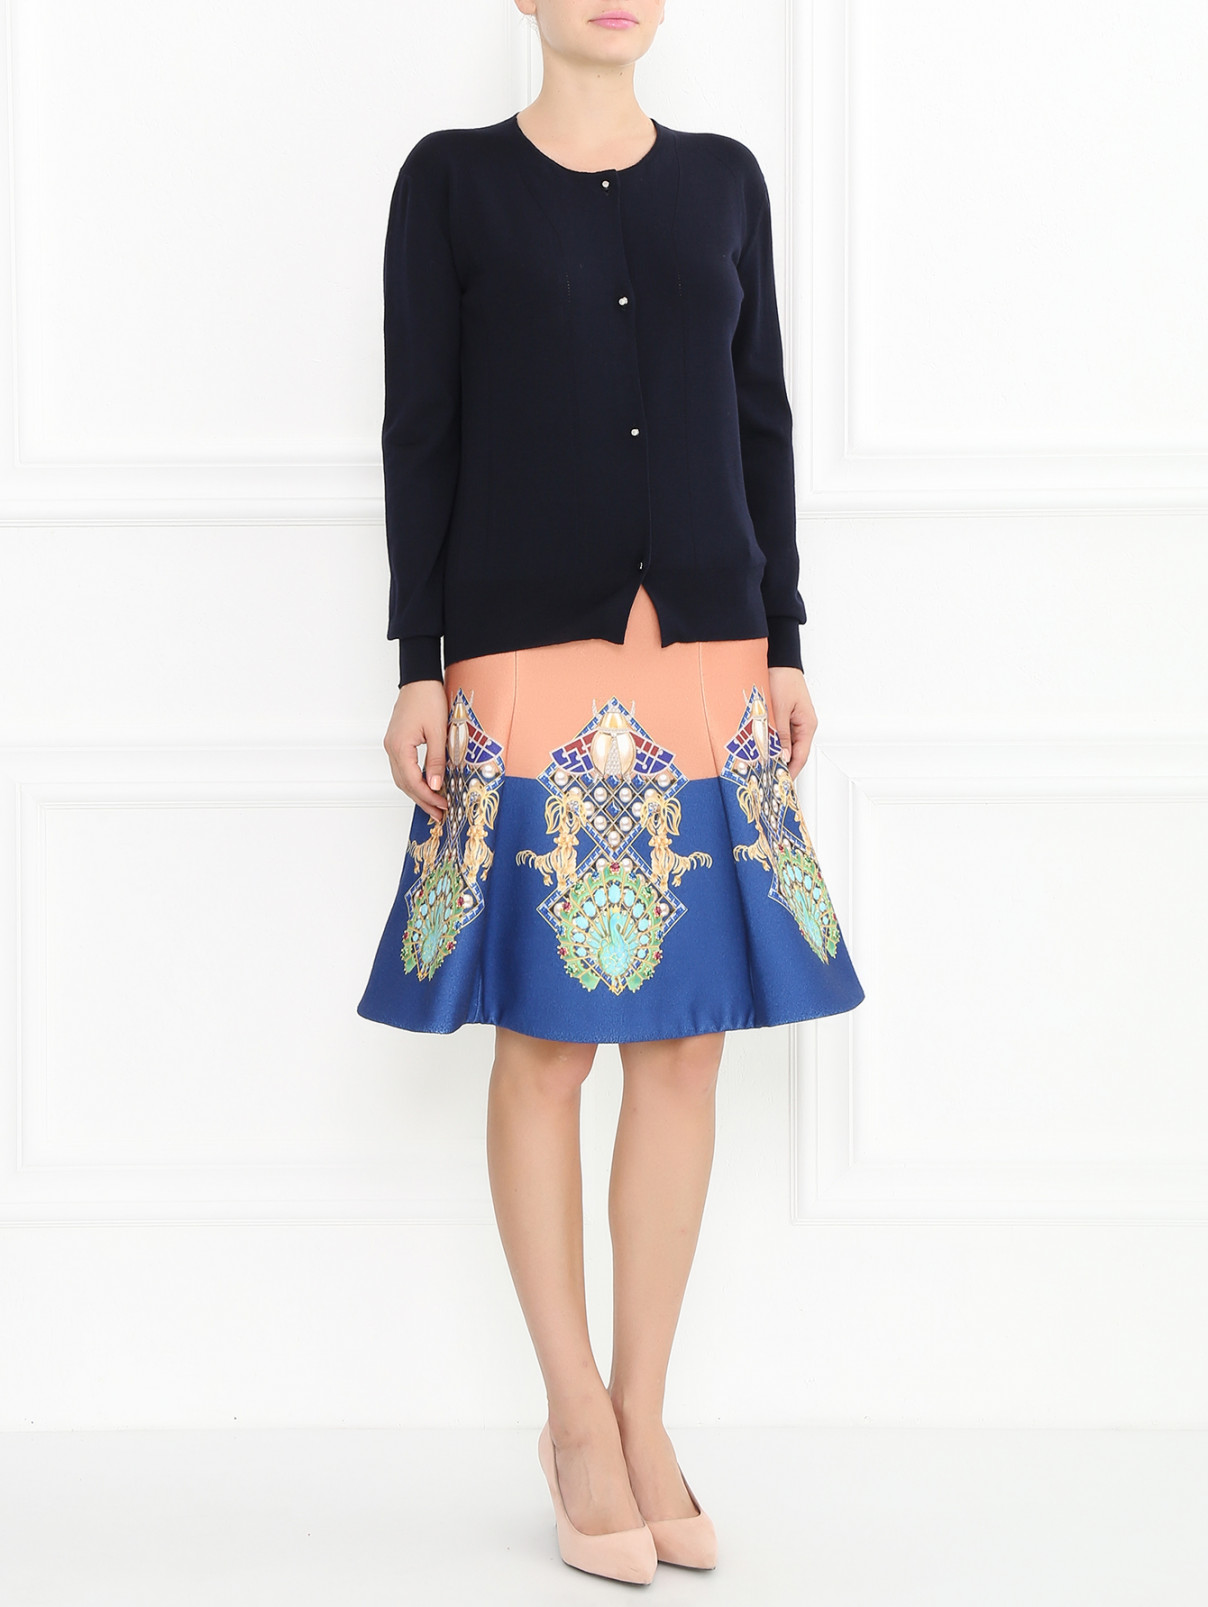 Расклешенная юбка с узором Mary Katrantzou  –  Модель Общий вид  – Цвет:  Узор